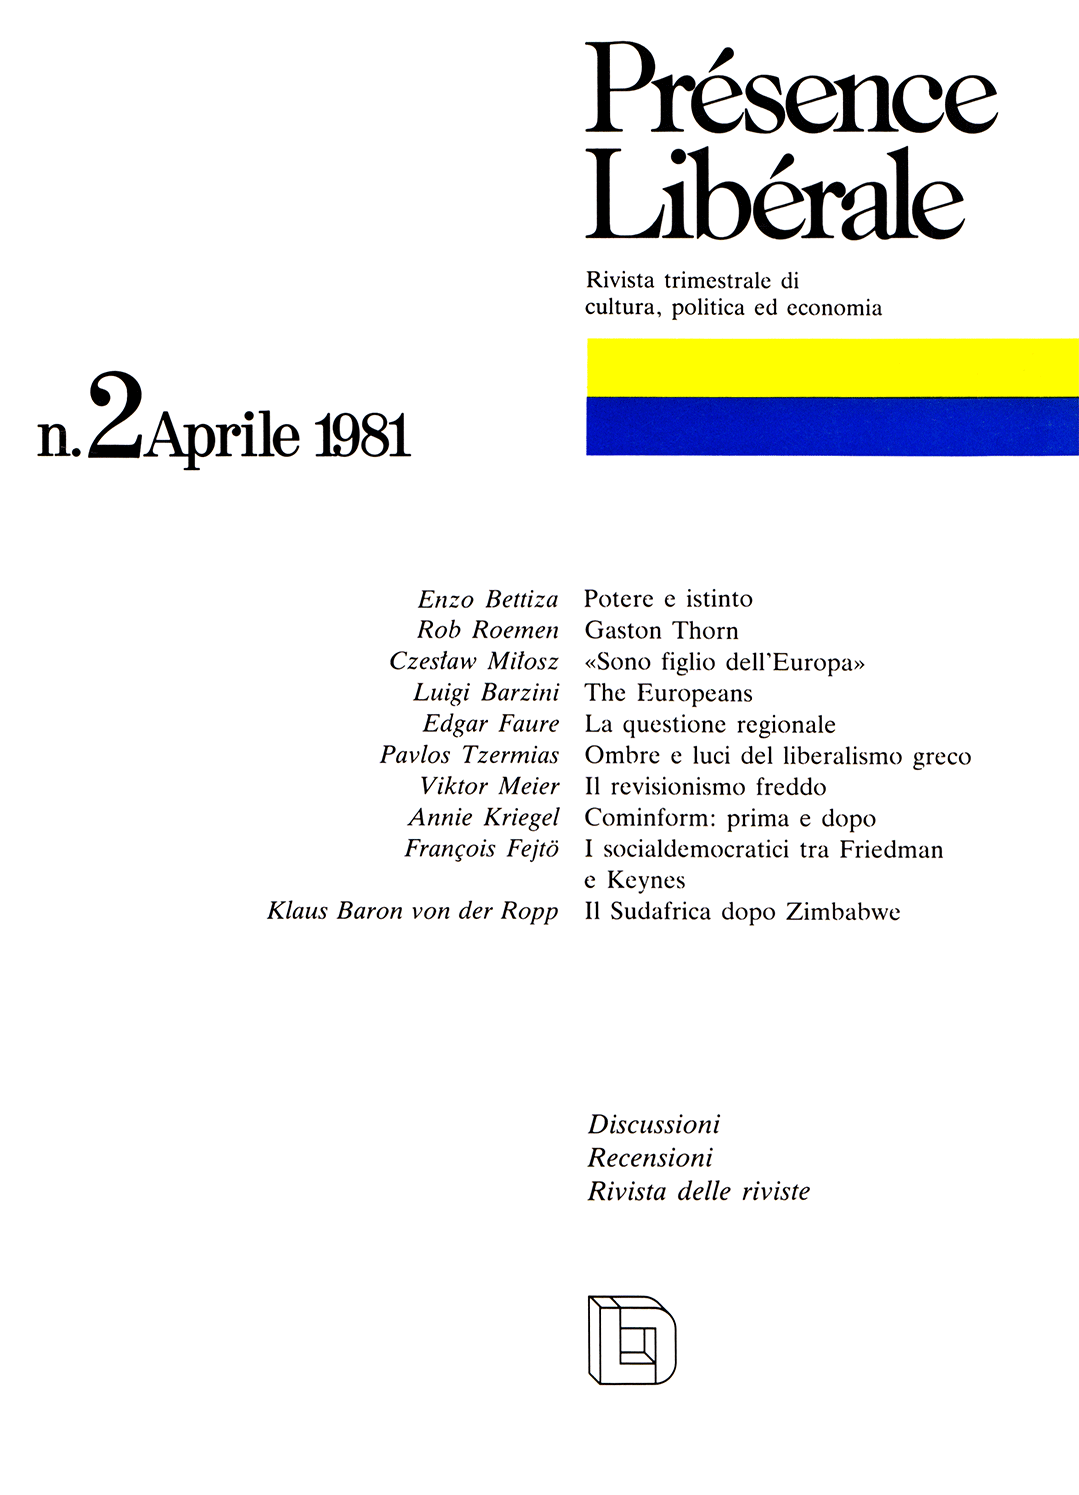 Présence libérale (Edizione italiana), issue Aprile 1981, no. 2, 1981, p. 96-104;